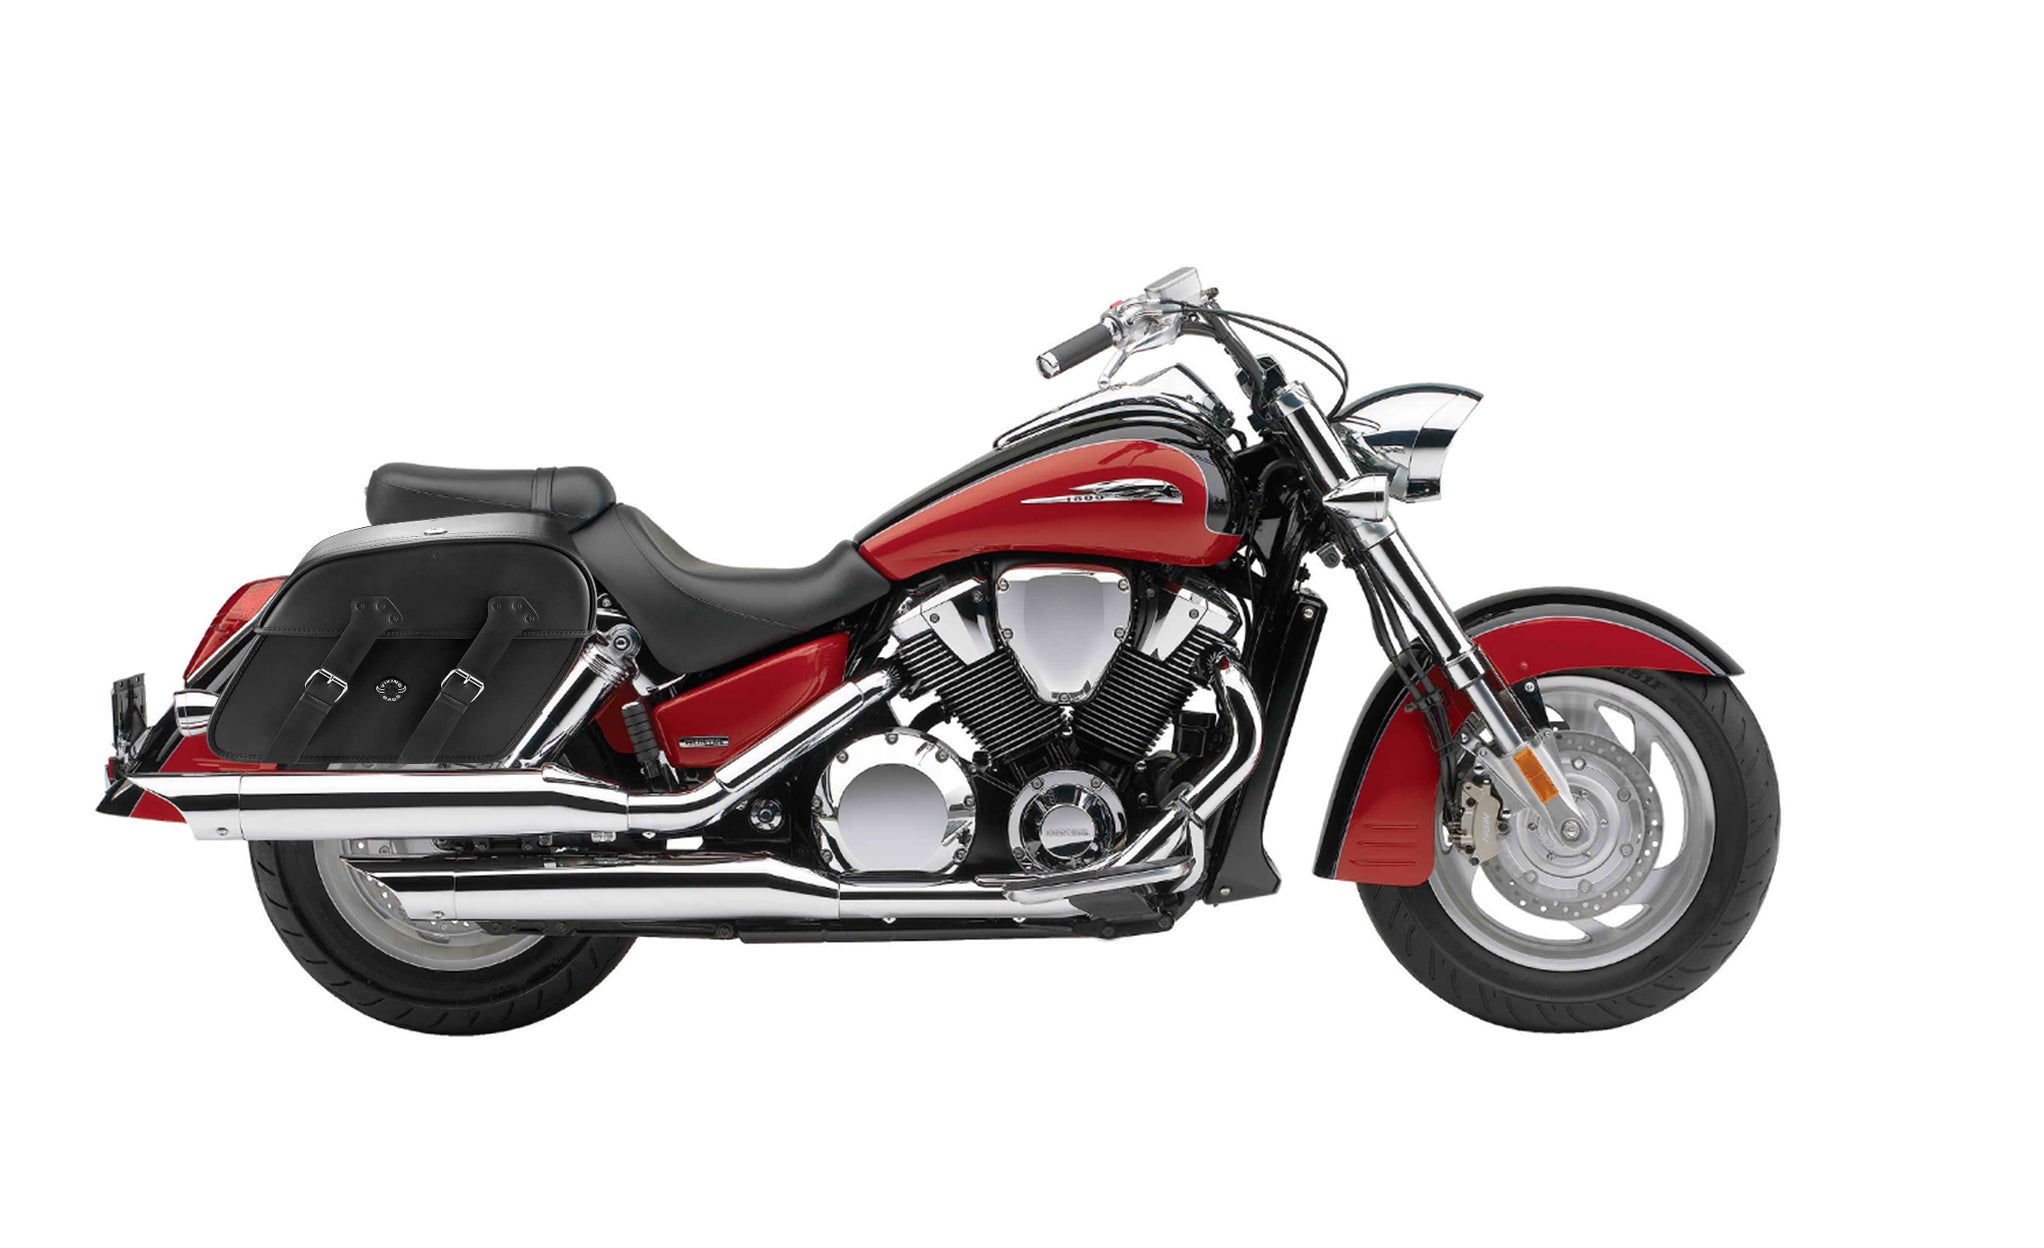 Viking Raven Extra Large Honda Vtx 1800 R Retro Leather Motorcycle Saddlebags on Bike Photo @expand